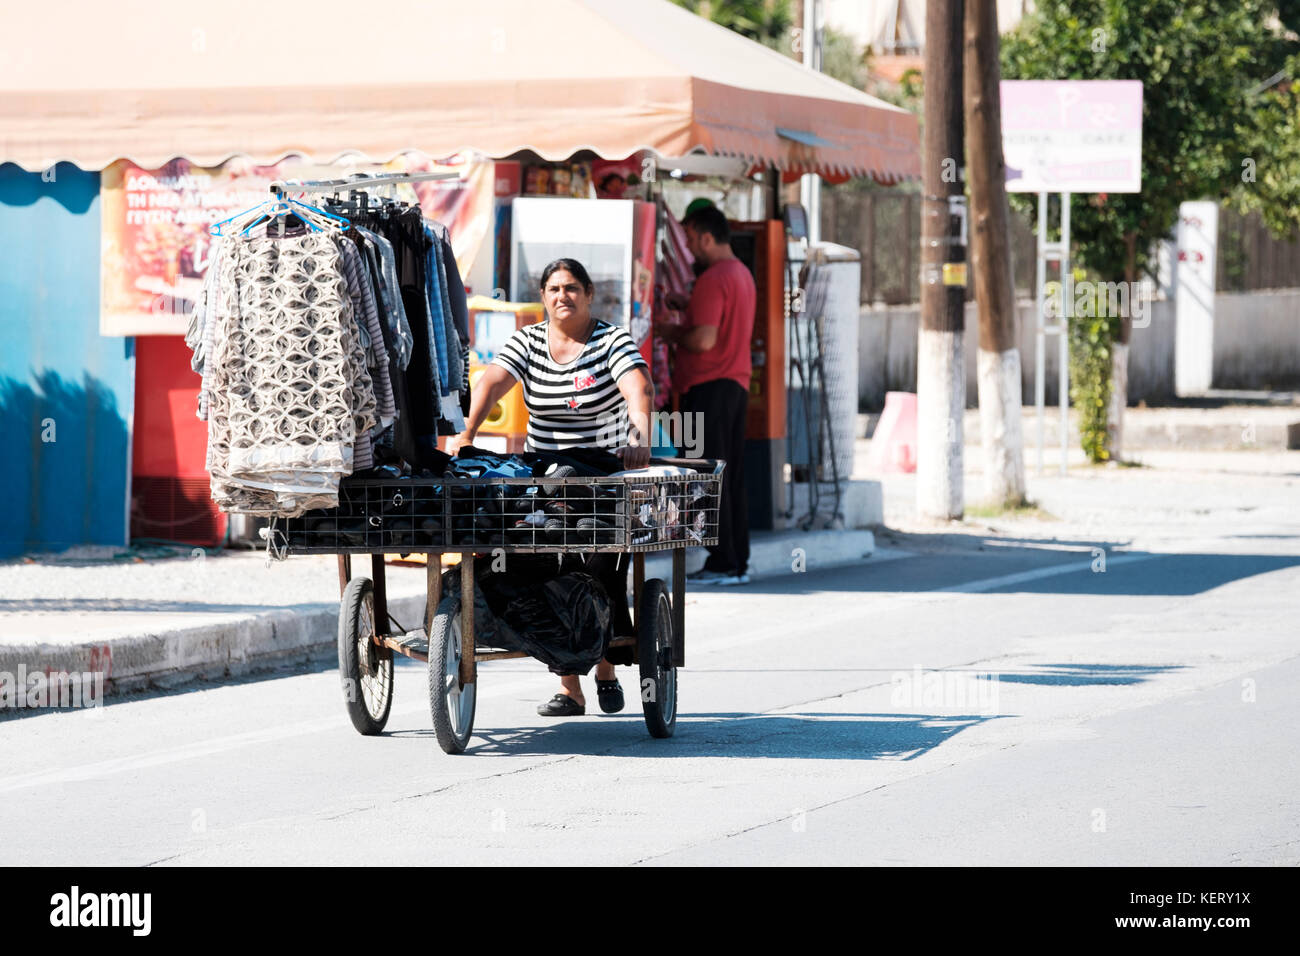 Una donna greca anziana che spinge un carrello a tre ruote lungo la strada principale. hte cart è caricato con gli articoli di abbigliamento che sta cercando di vendere Foto Stock